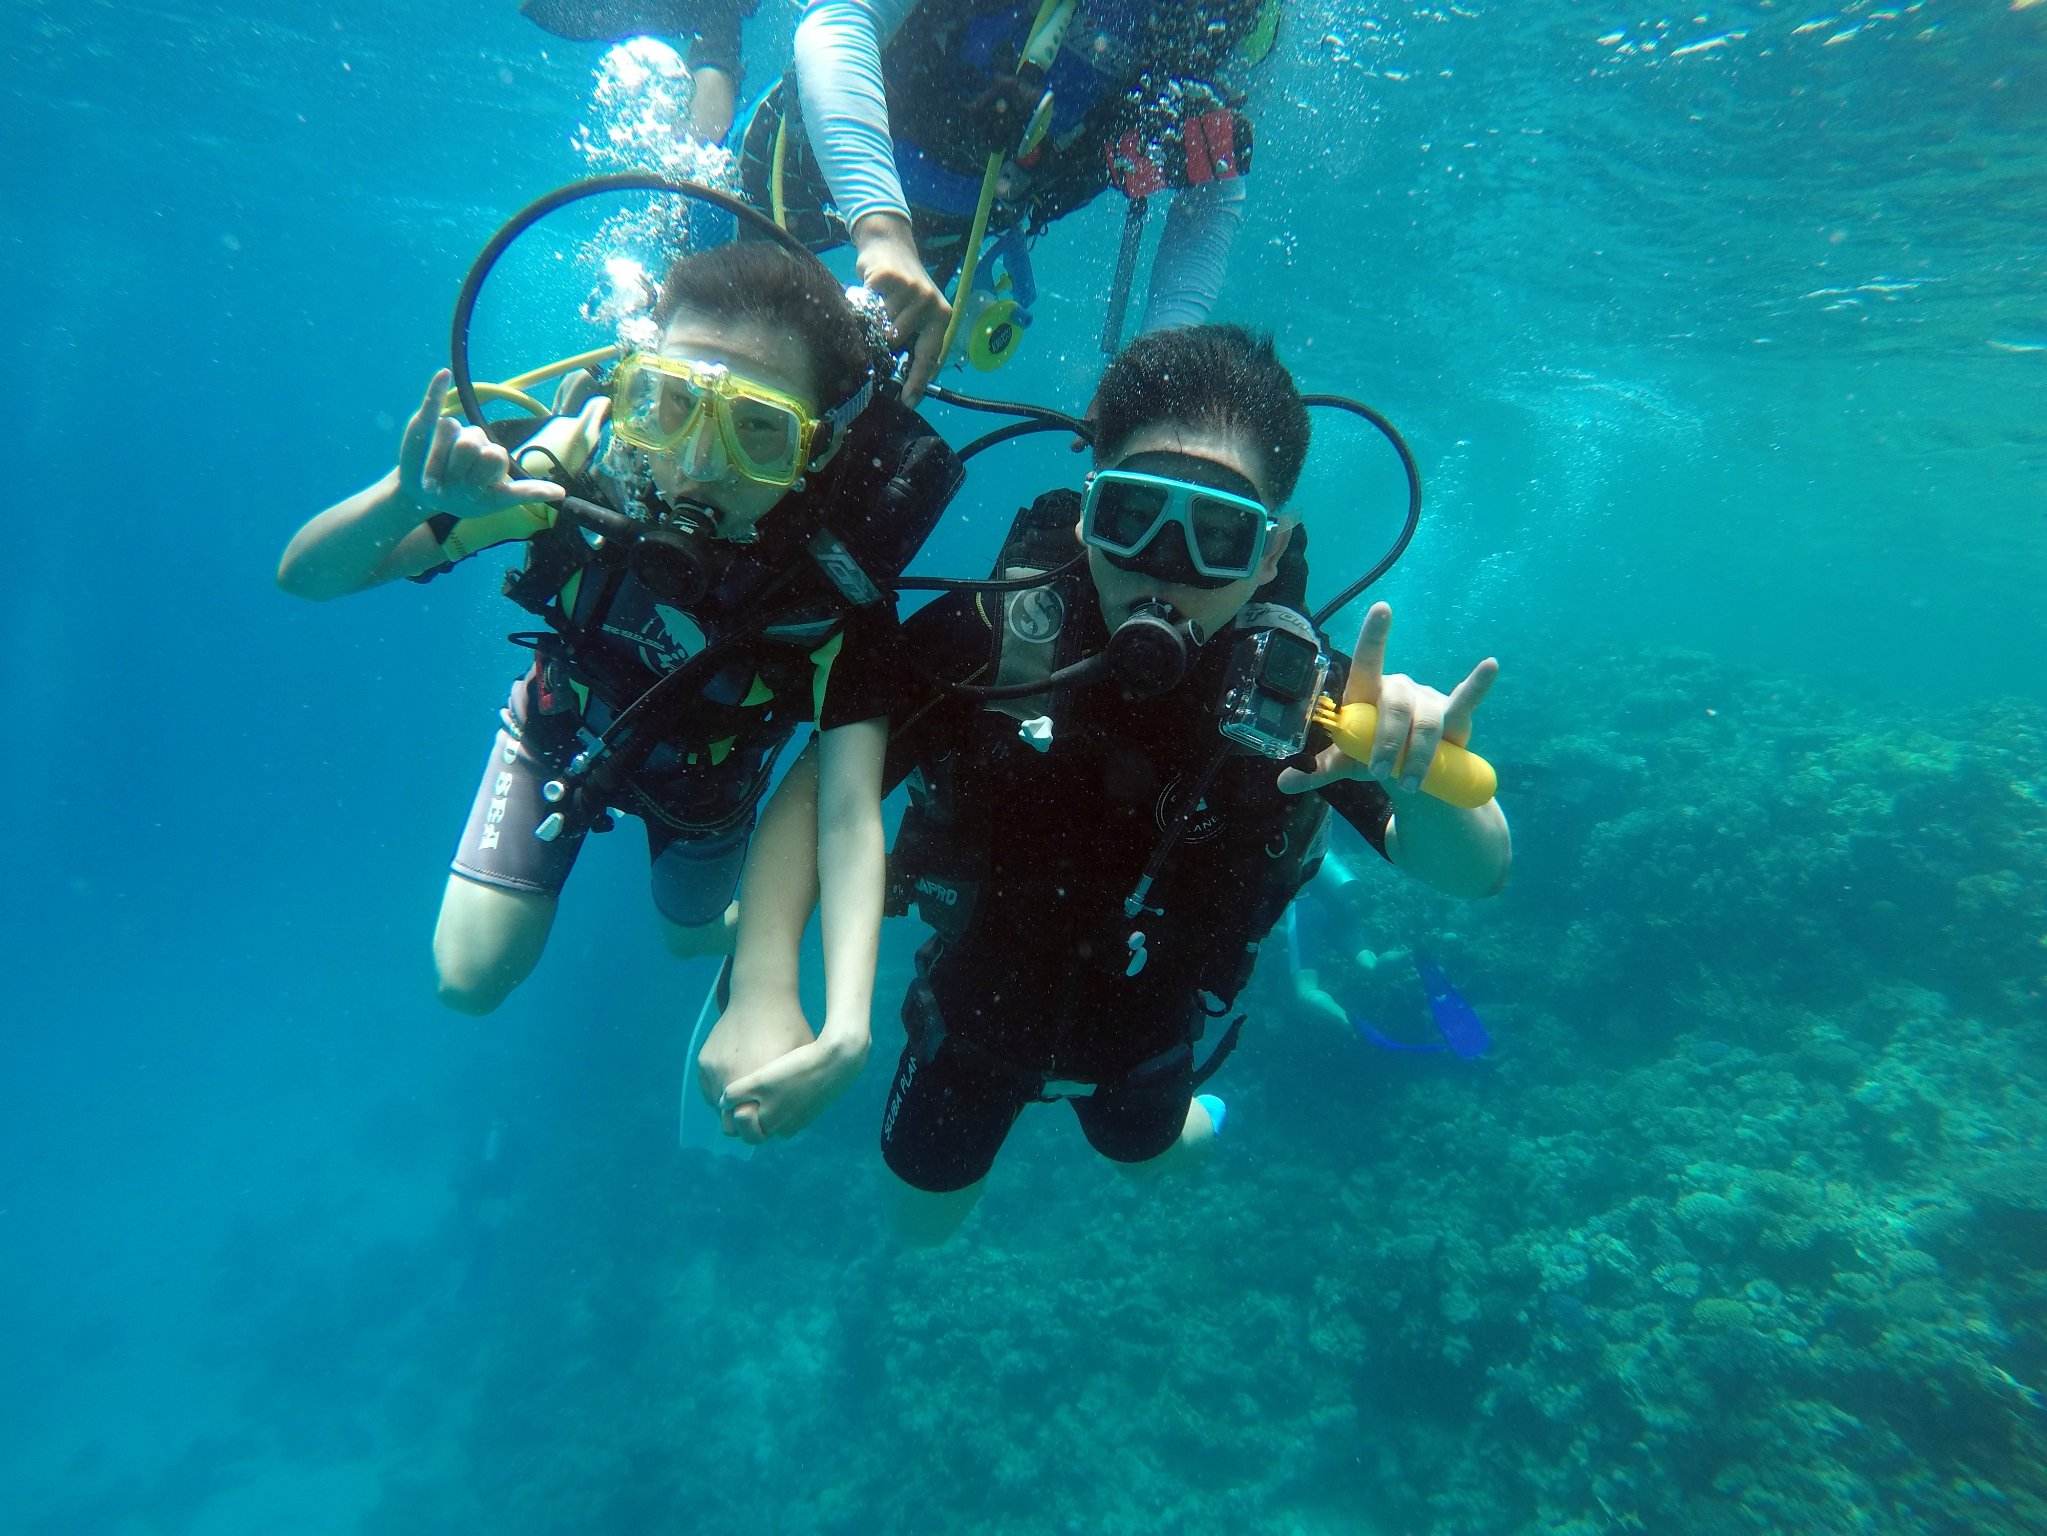 深圳西冲情人岛潜水体验一次正规潜水俱乐部含往返岛上快艇提供全部